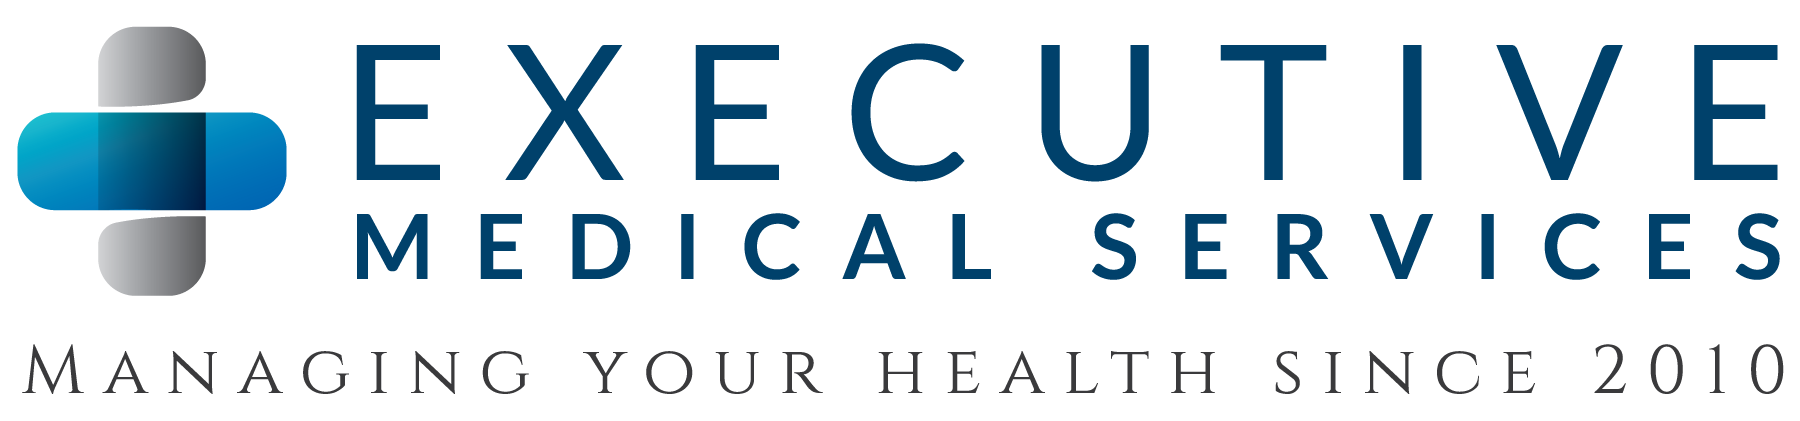 Executive Medical Services, Inc.